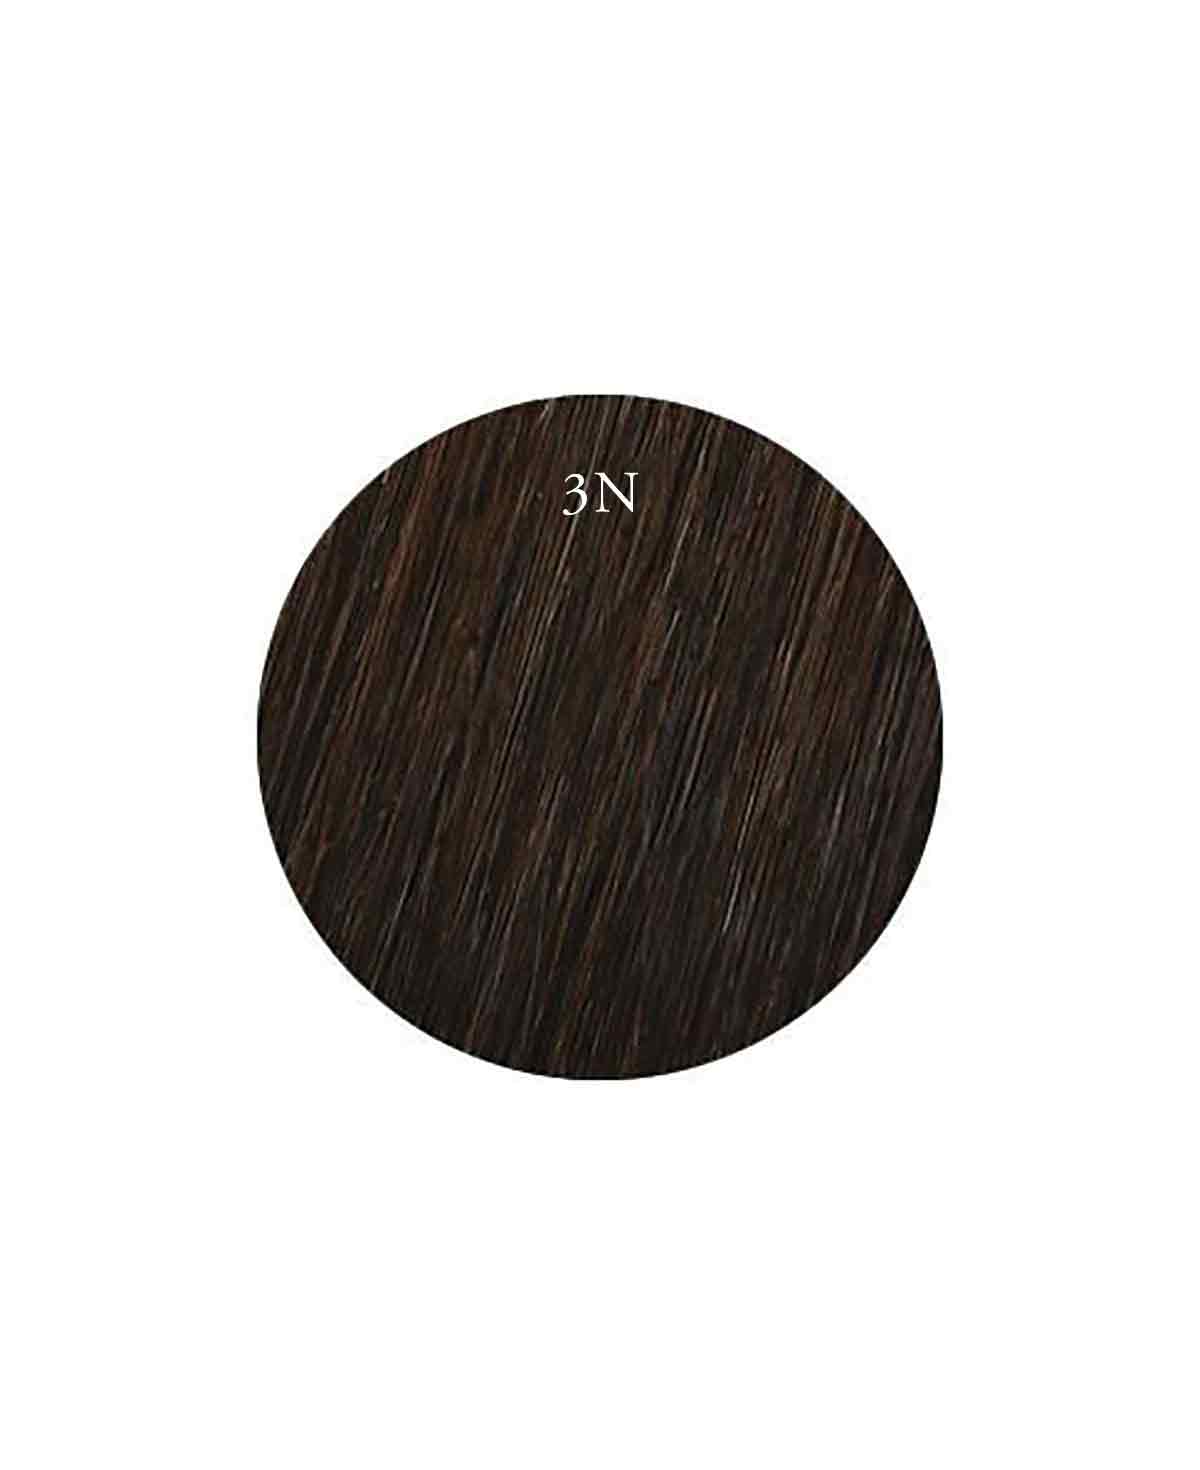 30-35cm (14") SKIN WEFT HAIR-EXTENSIONS - BLACK BROWN - 3N